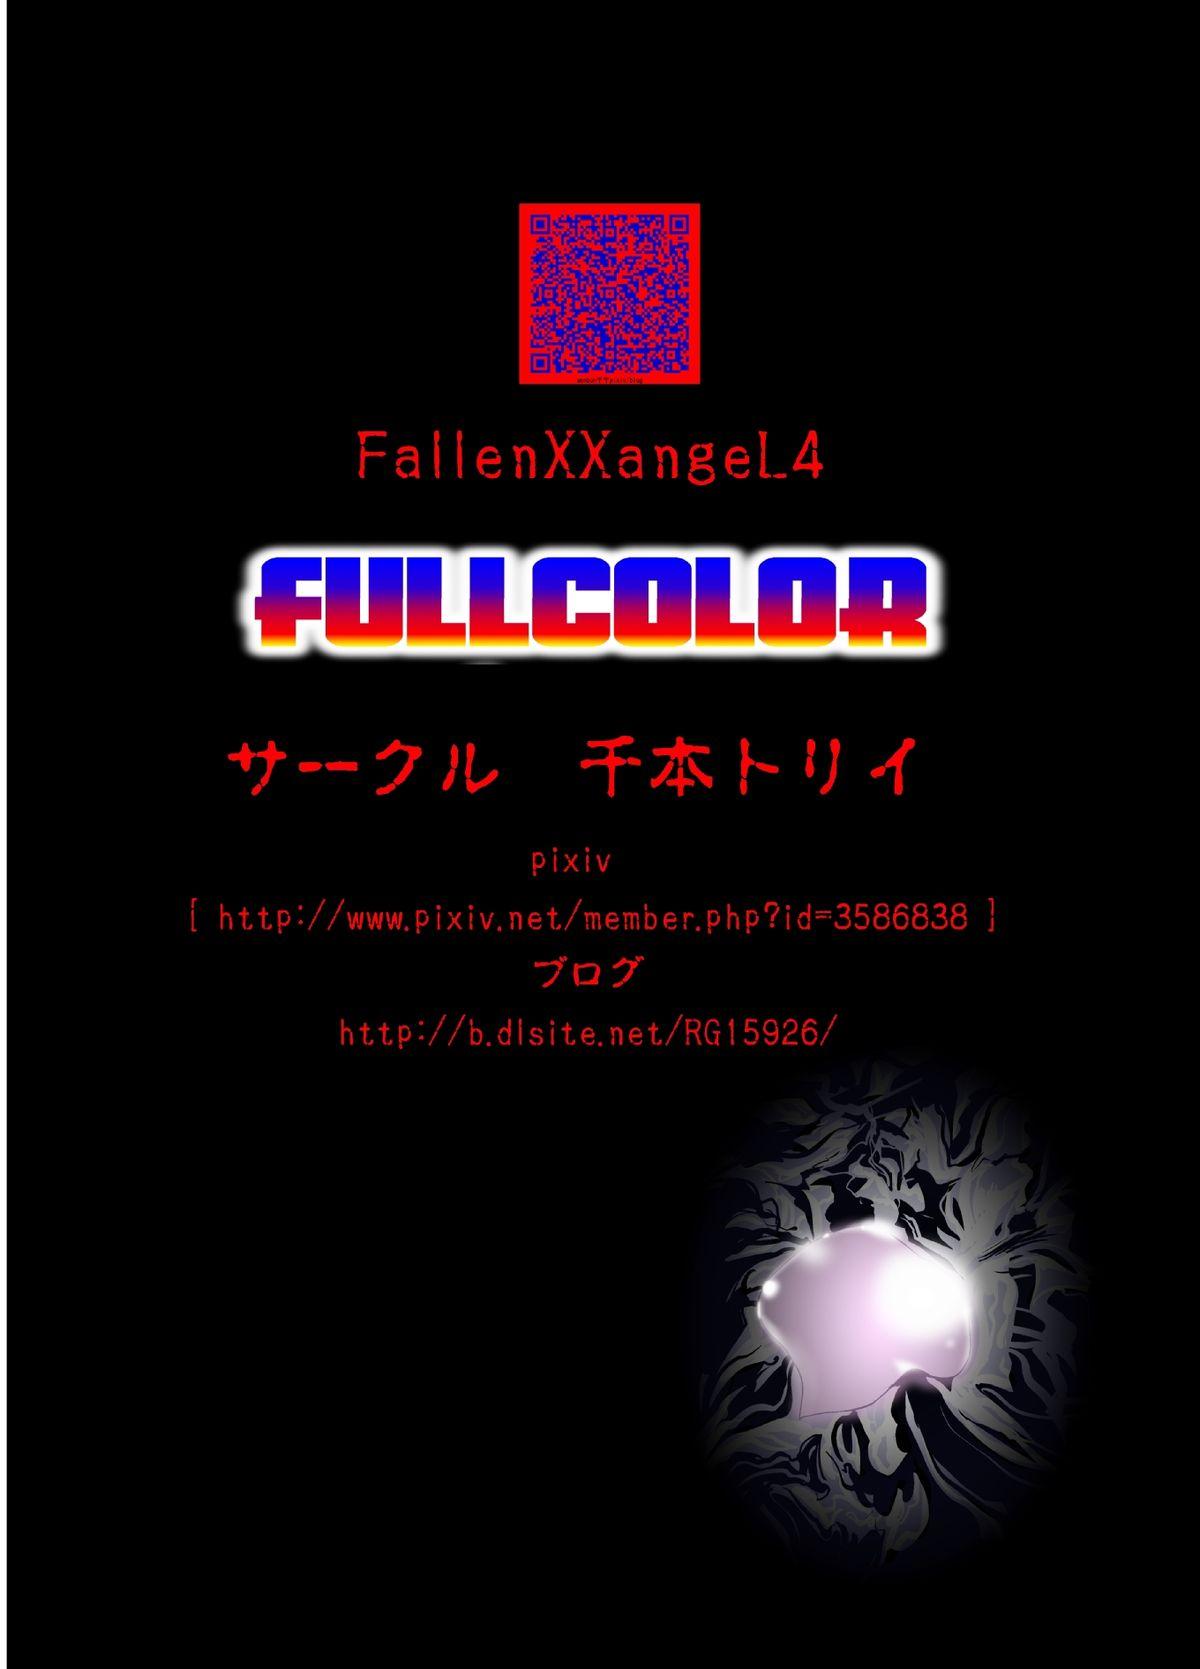 FallenXXangeL4 FULL COLOR 41